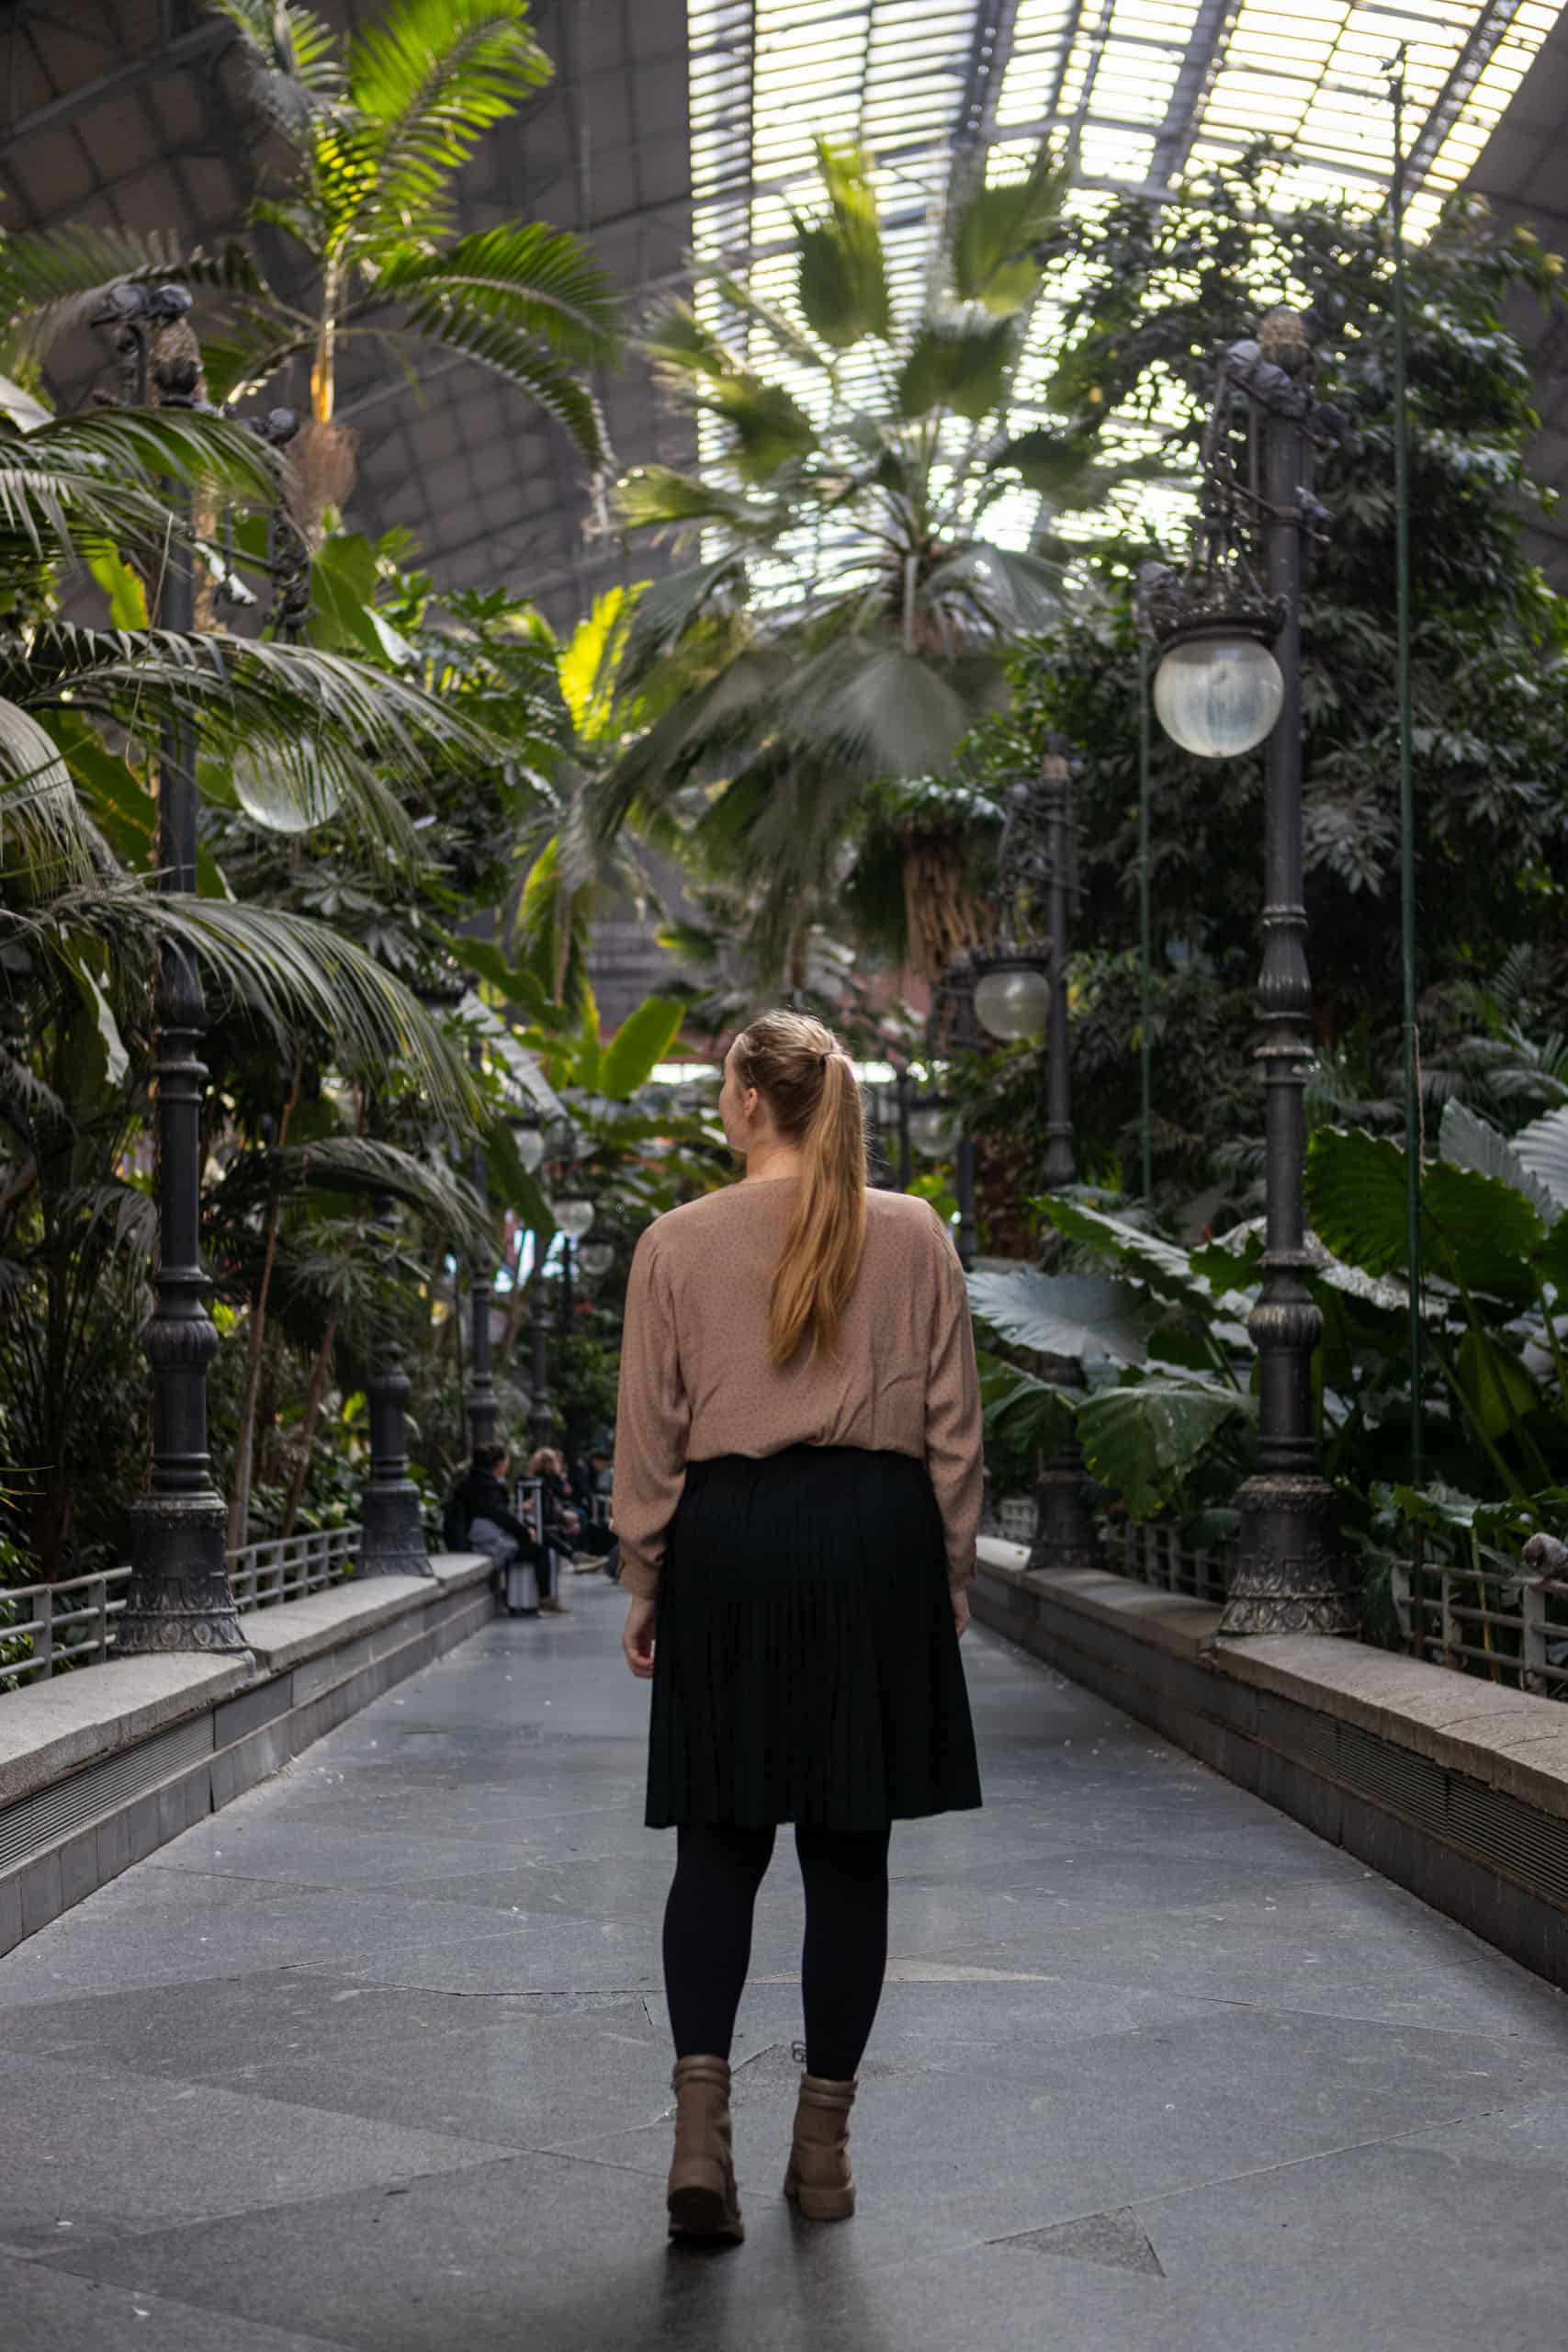 Manouk loopt met bruine blouse en zwarte rok over een pad door de botanische tuin in Atocha, met groen aan beide zijden.